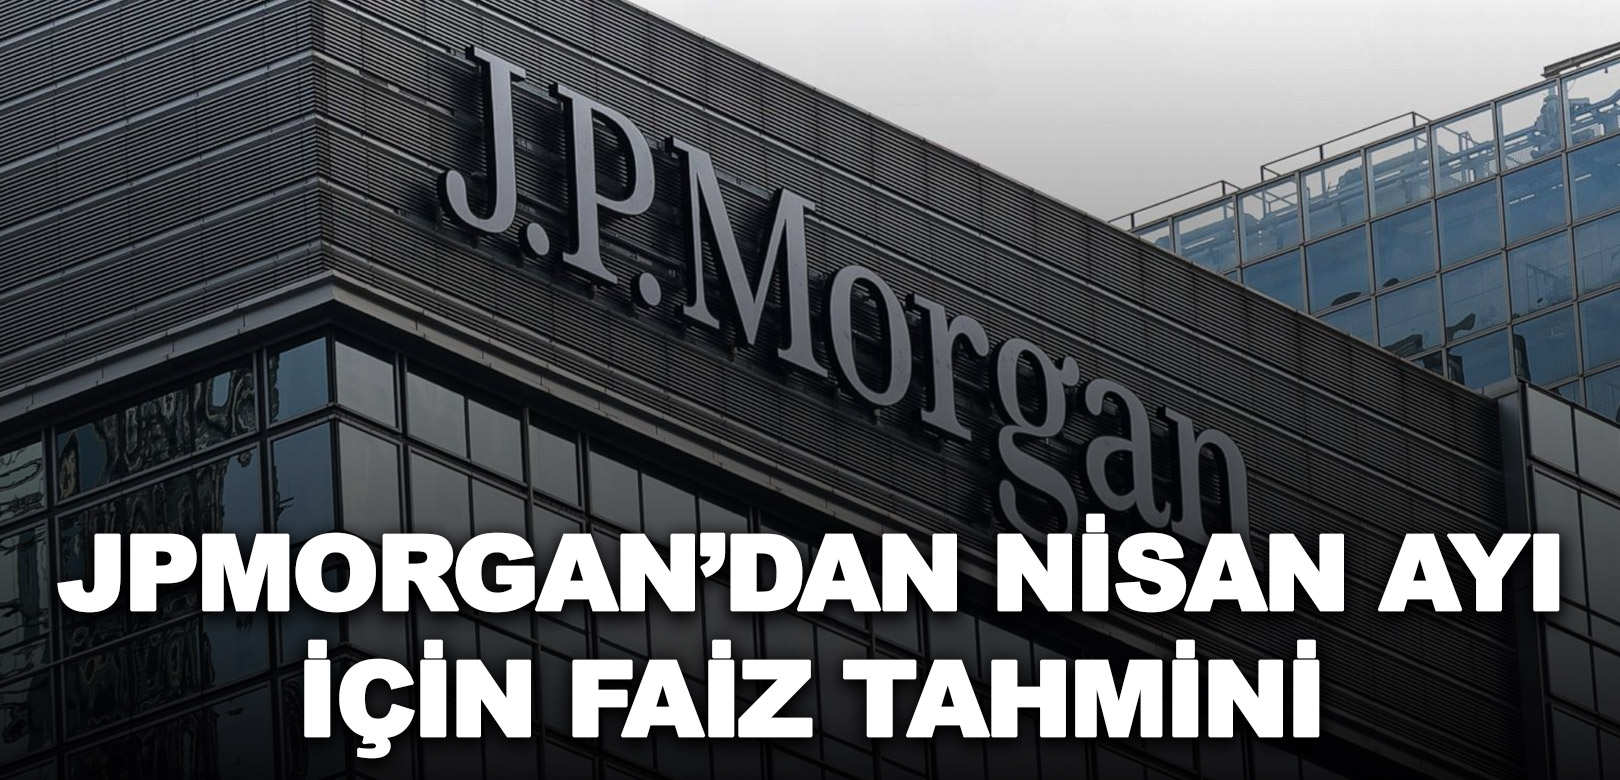 JPMorgan’dan nisan ayı için faiz tahmini